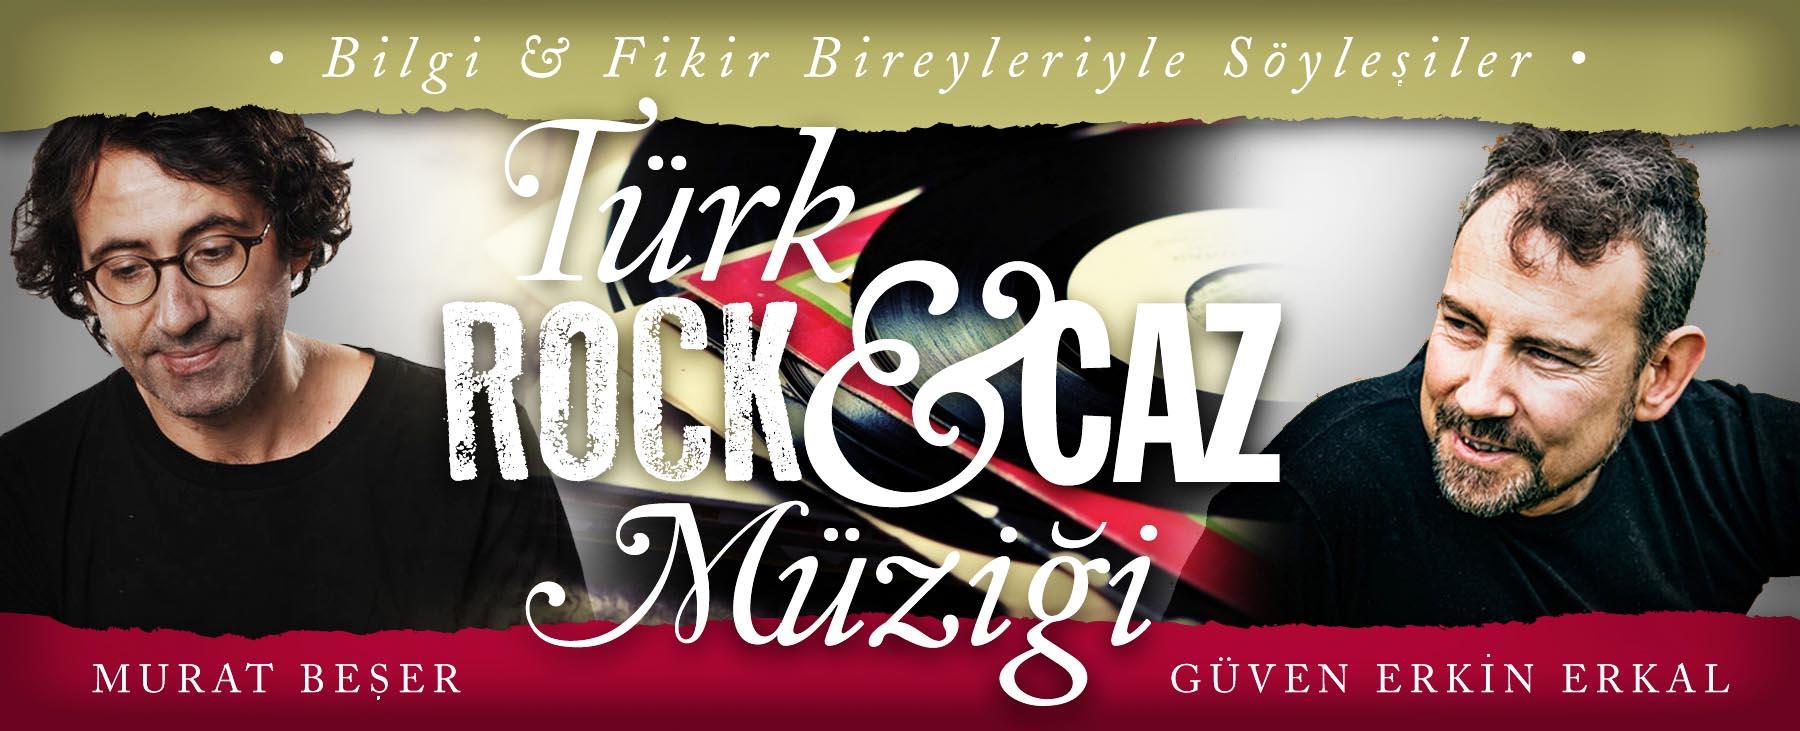 Türk rock ve müzik tarihi, konuşmacı, Murat Beşer, Güven Erkin Erkal